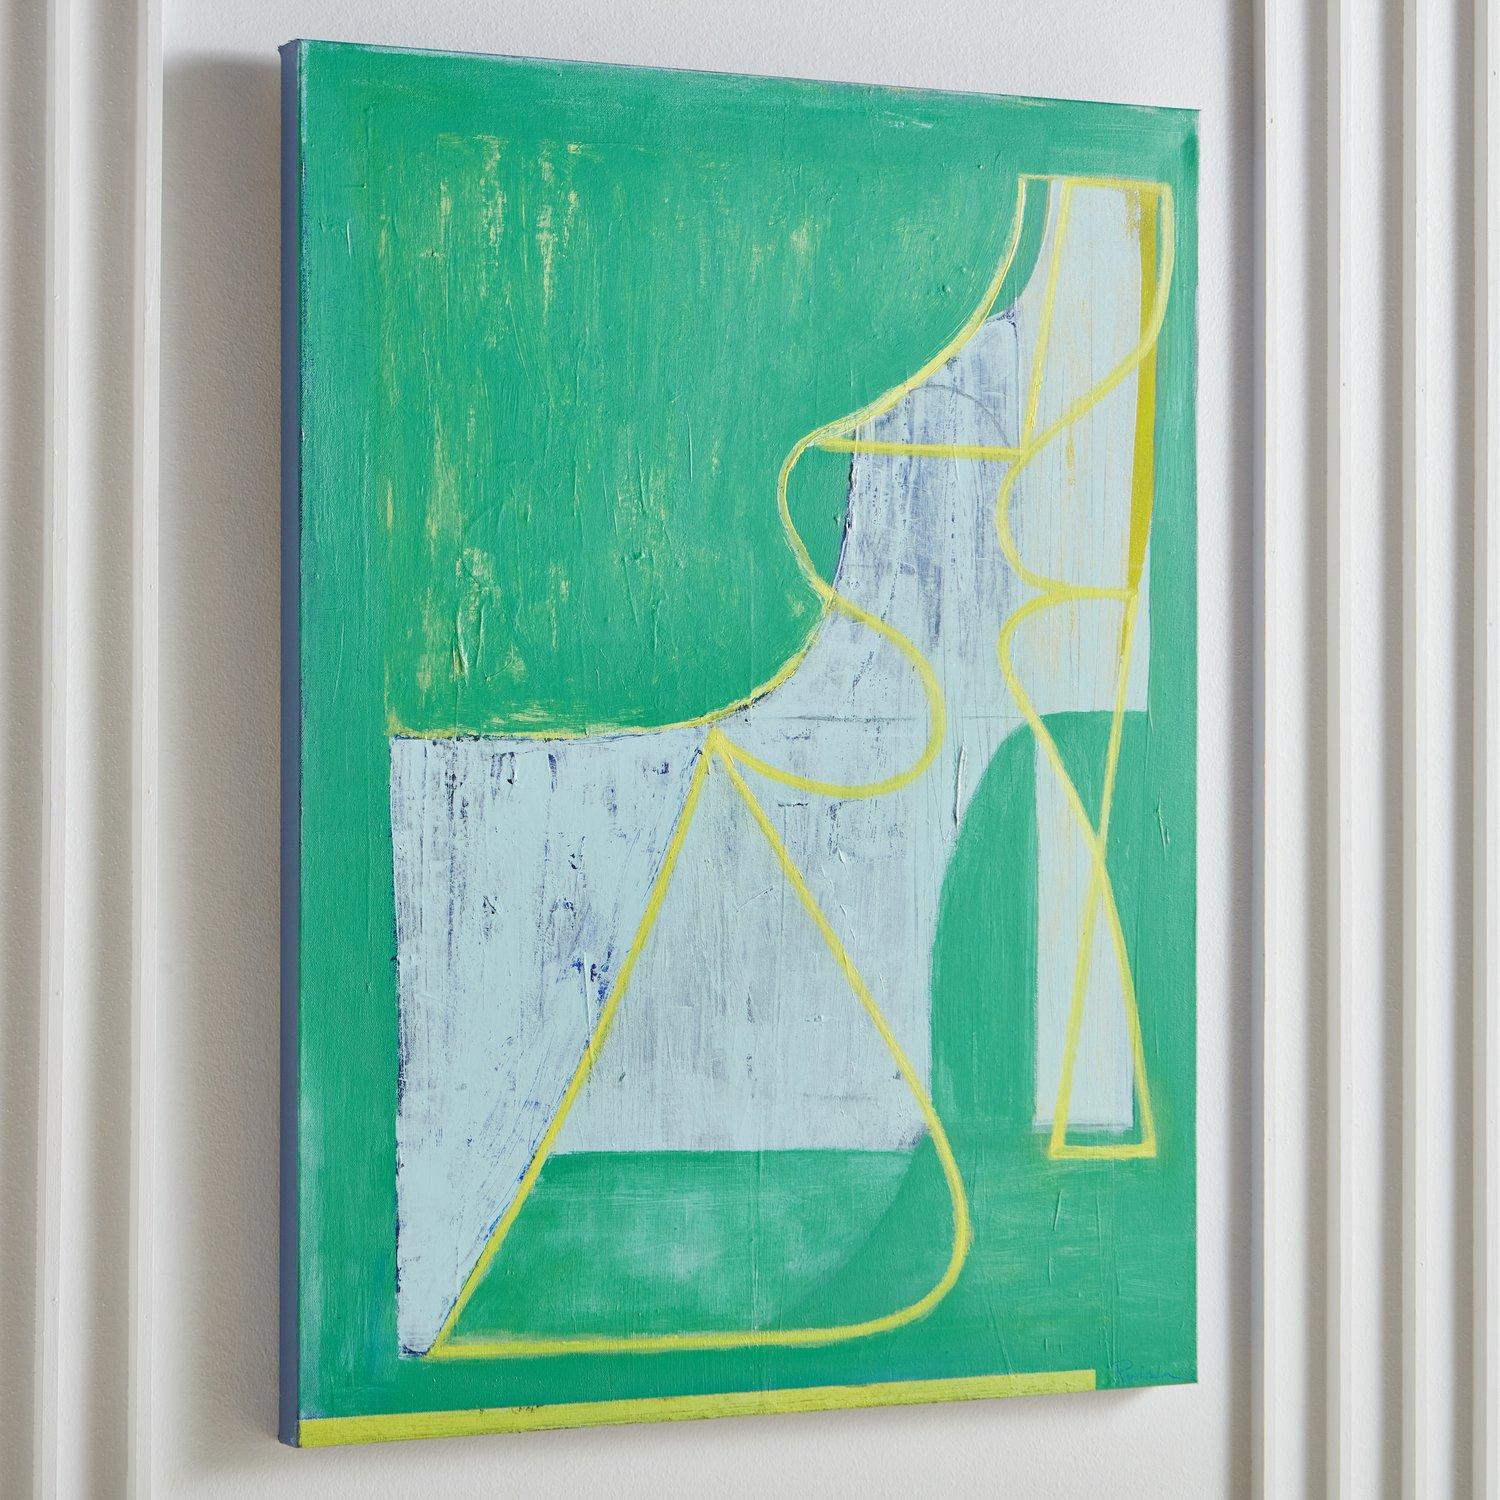 Paint Juniper by Karen Parisian, 2020